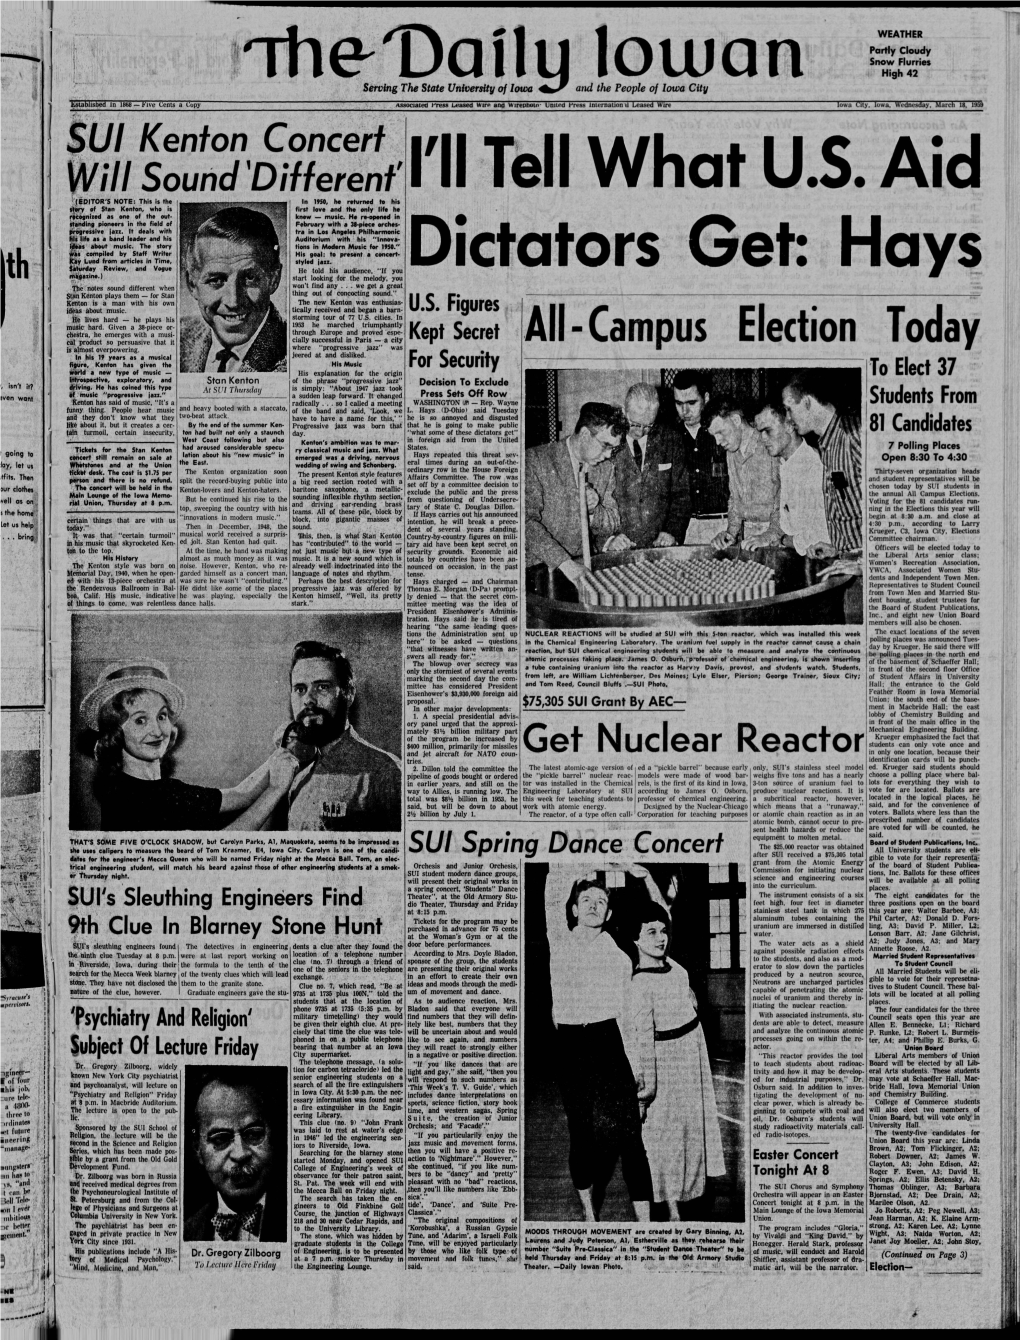 Daily Iowan (Iowa City, Iowa), 1959-03-18